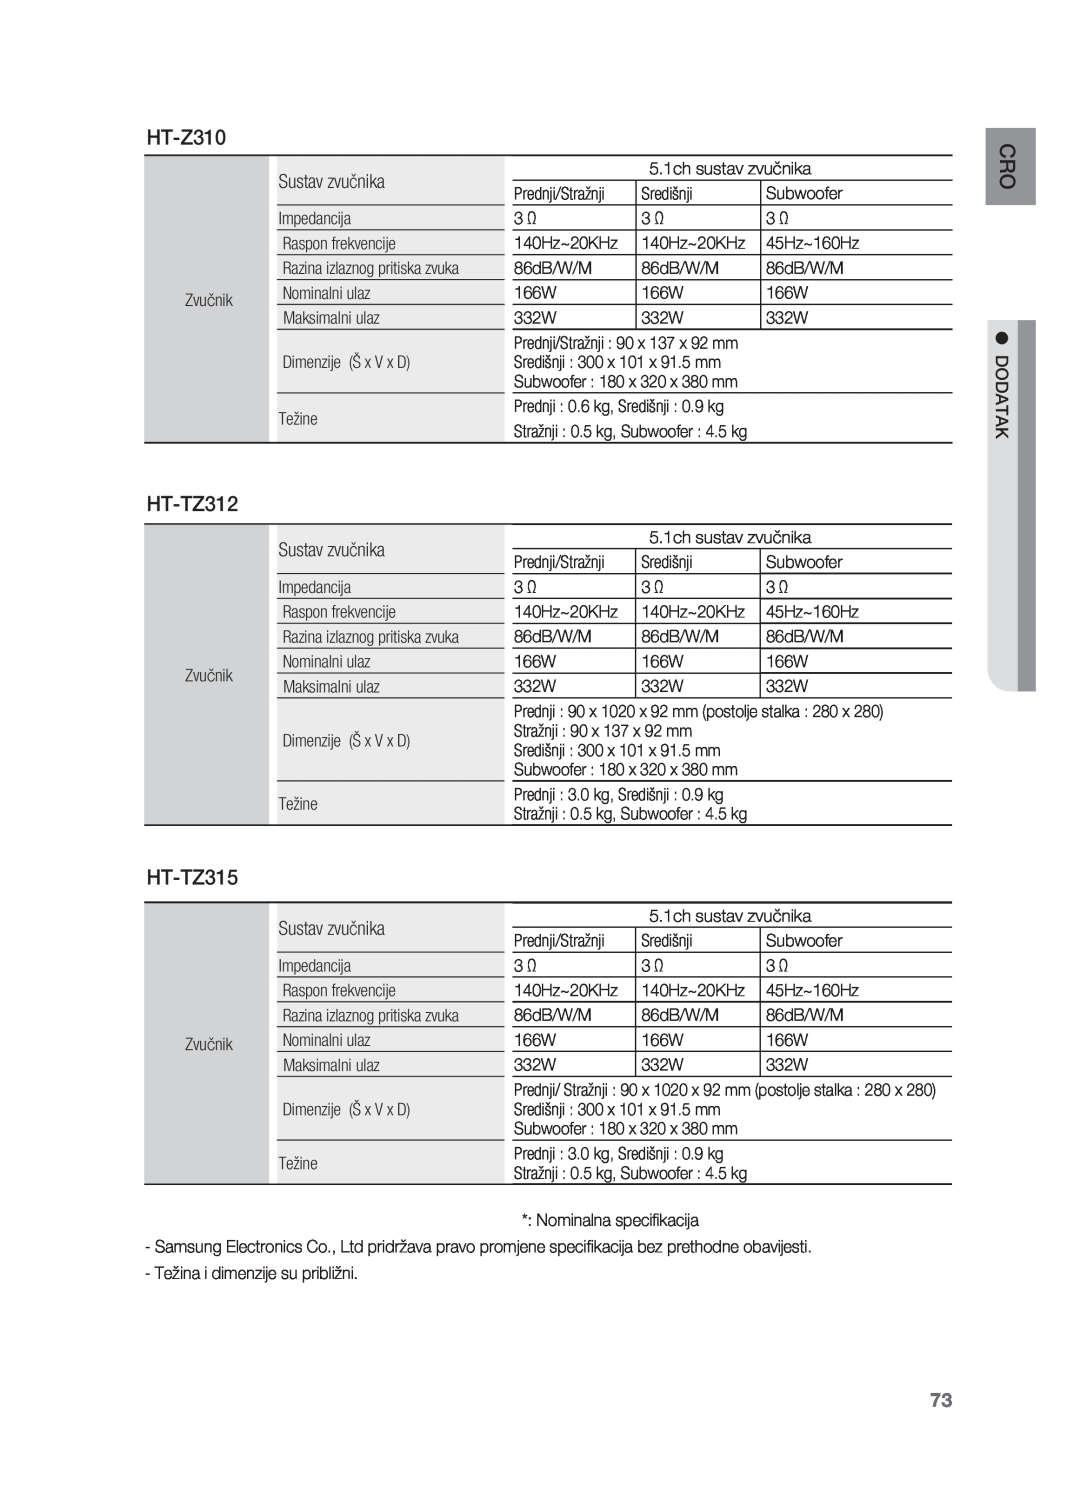 Samsung HT-TZ215R/EDC, HT-TZ212R/EDC, HT-Z310R/EDC, HT-Z210R/EDC, HT-TZ315R/EDC manual HT-TZ312, Sustav zvučnika 